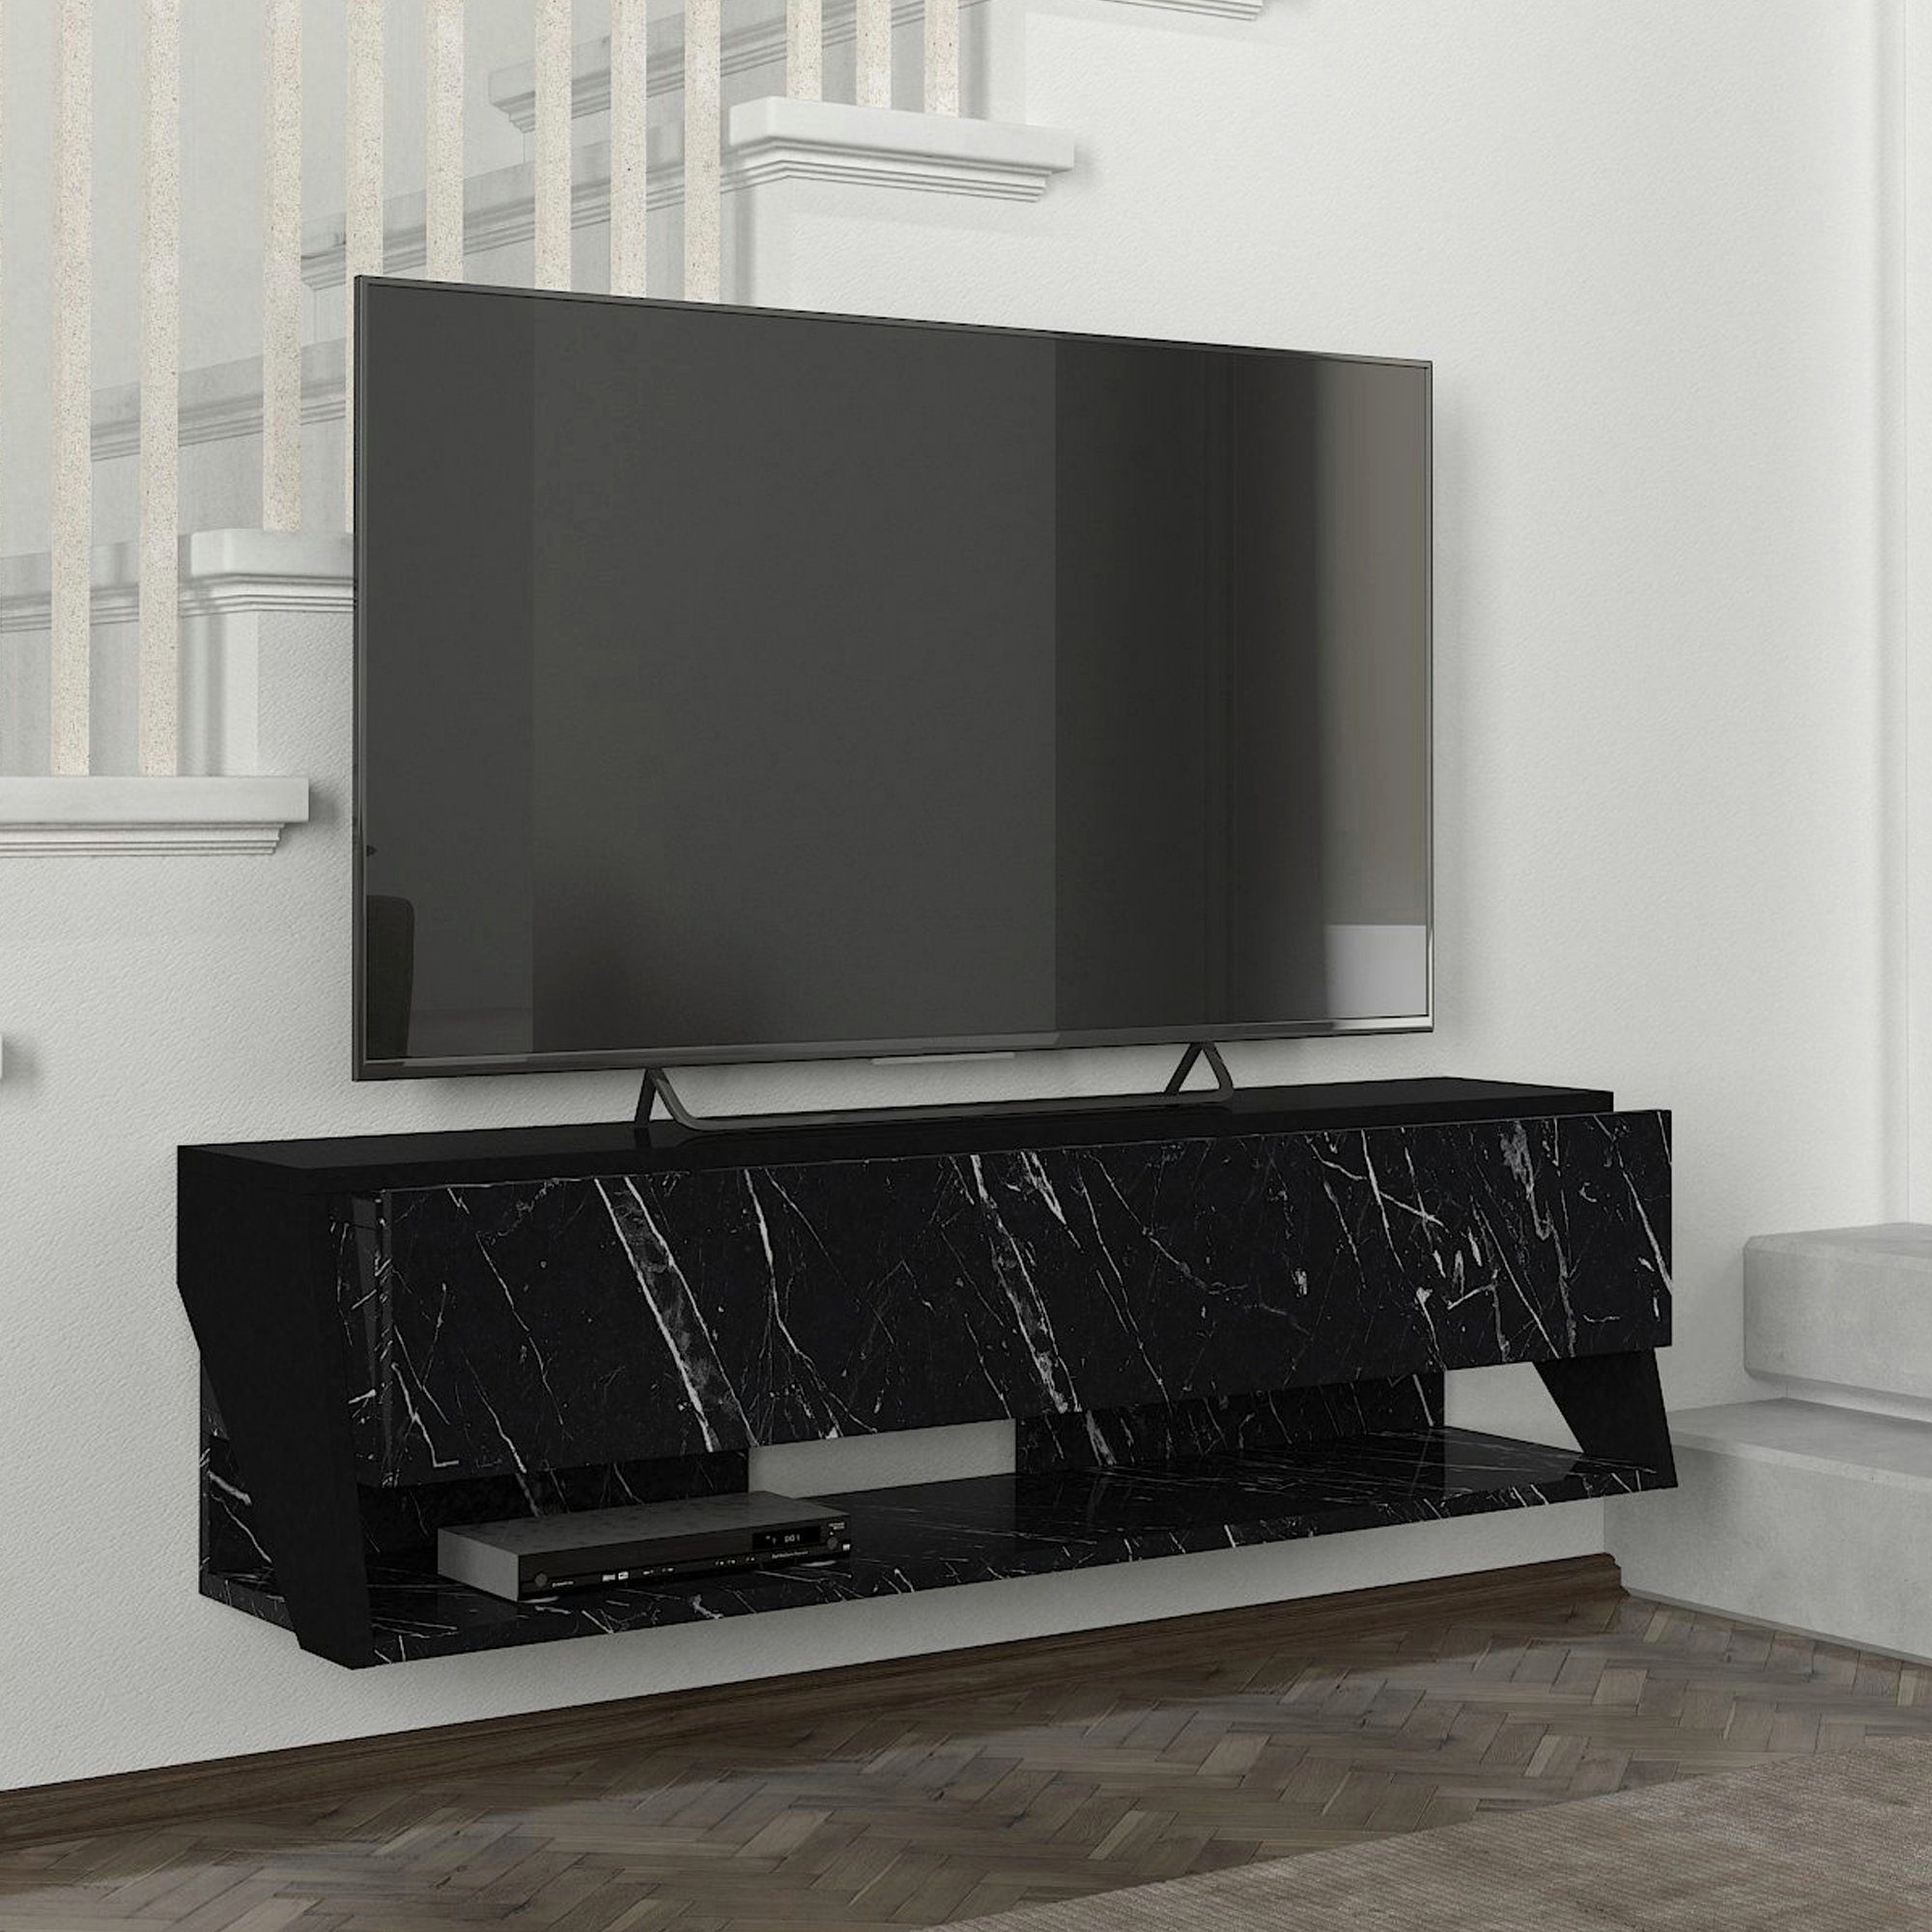 120x31,5x32,5cm Marmor, Marmor, »Kimitoön« 5x32, en.casa schwarz, 5cm Fernsehtisch TV-Schrank schwarz